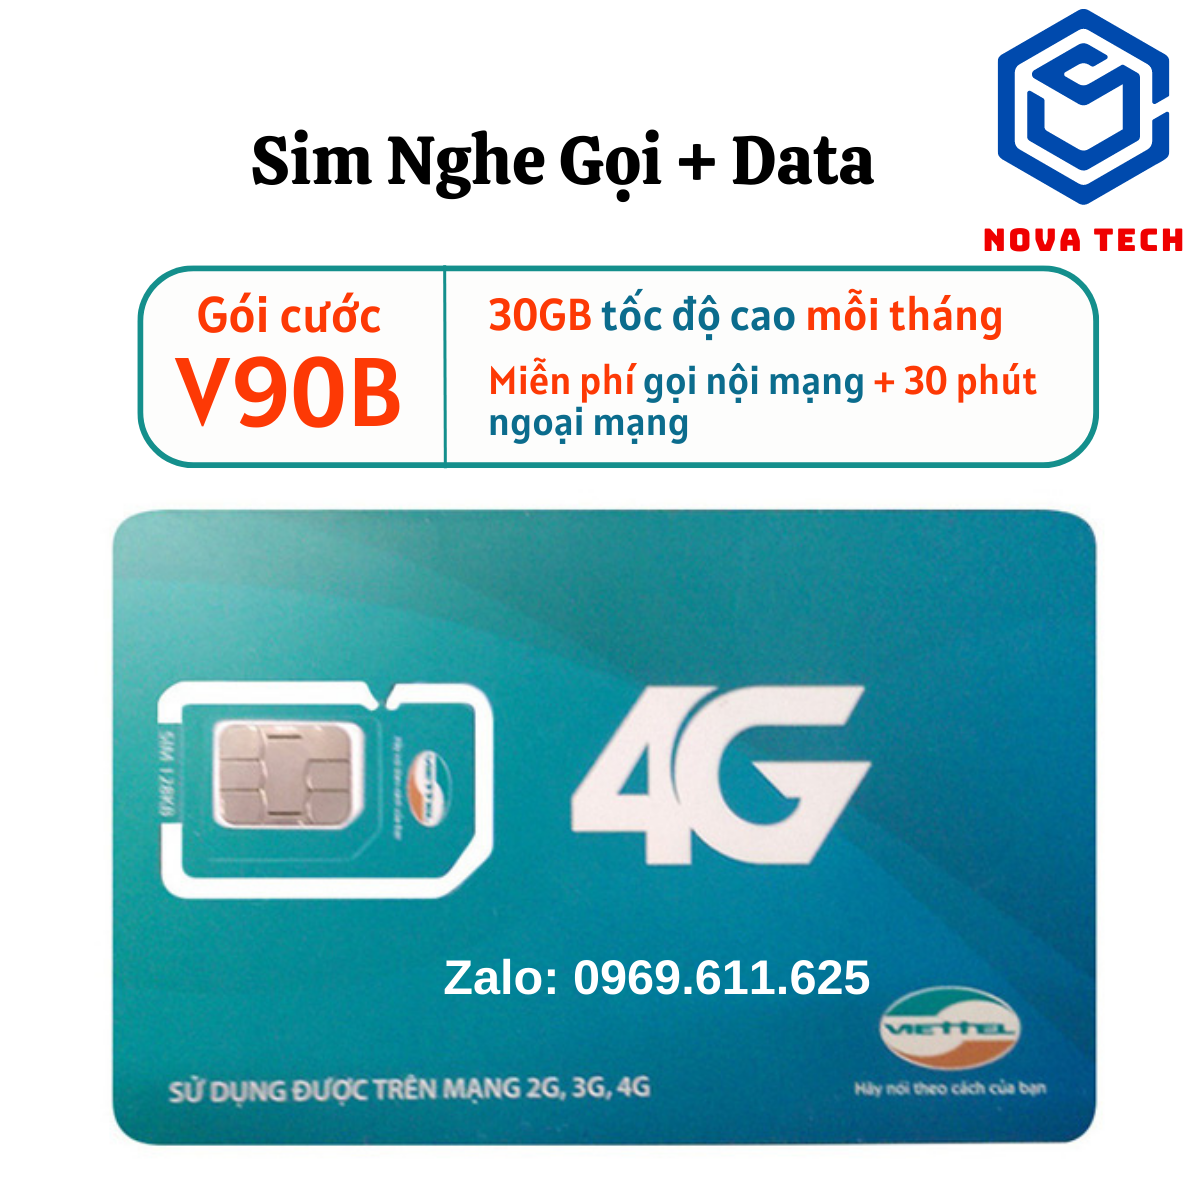 Sim 4G Viettel Data tốc độ cao + Miễn phí nghe gọi - Gói V90B Tha hồ lên mạng , nghe gọi thả ga - Phí cực rẻ chỉ 90k . FREESHIP - CHƯA KÍCH HOẠT.